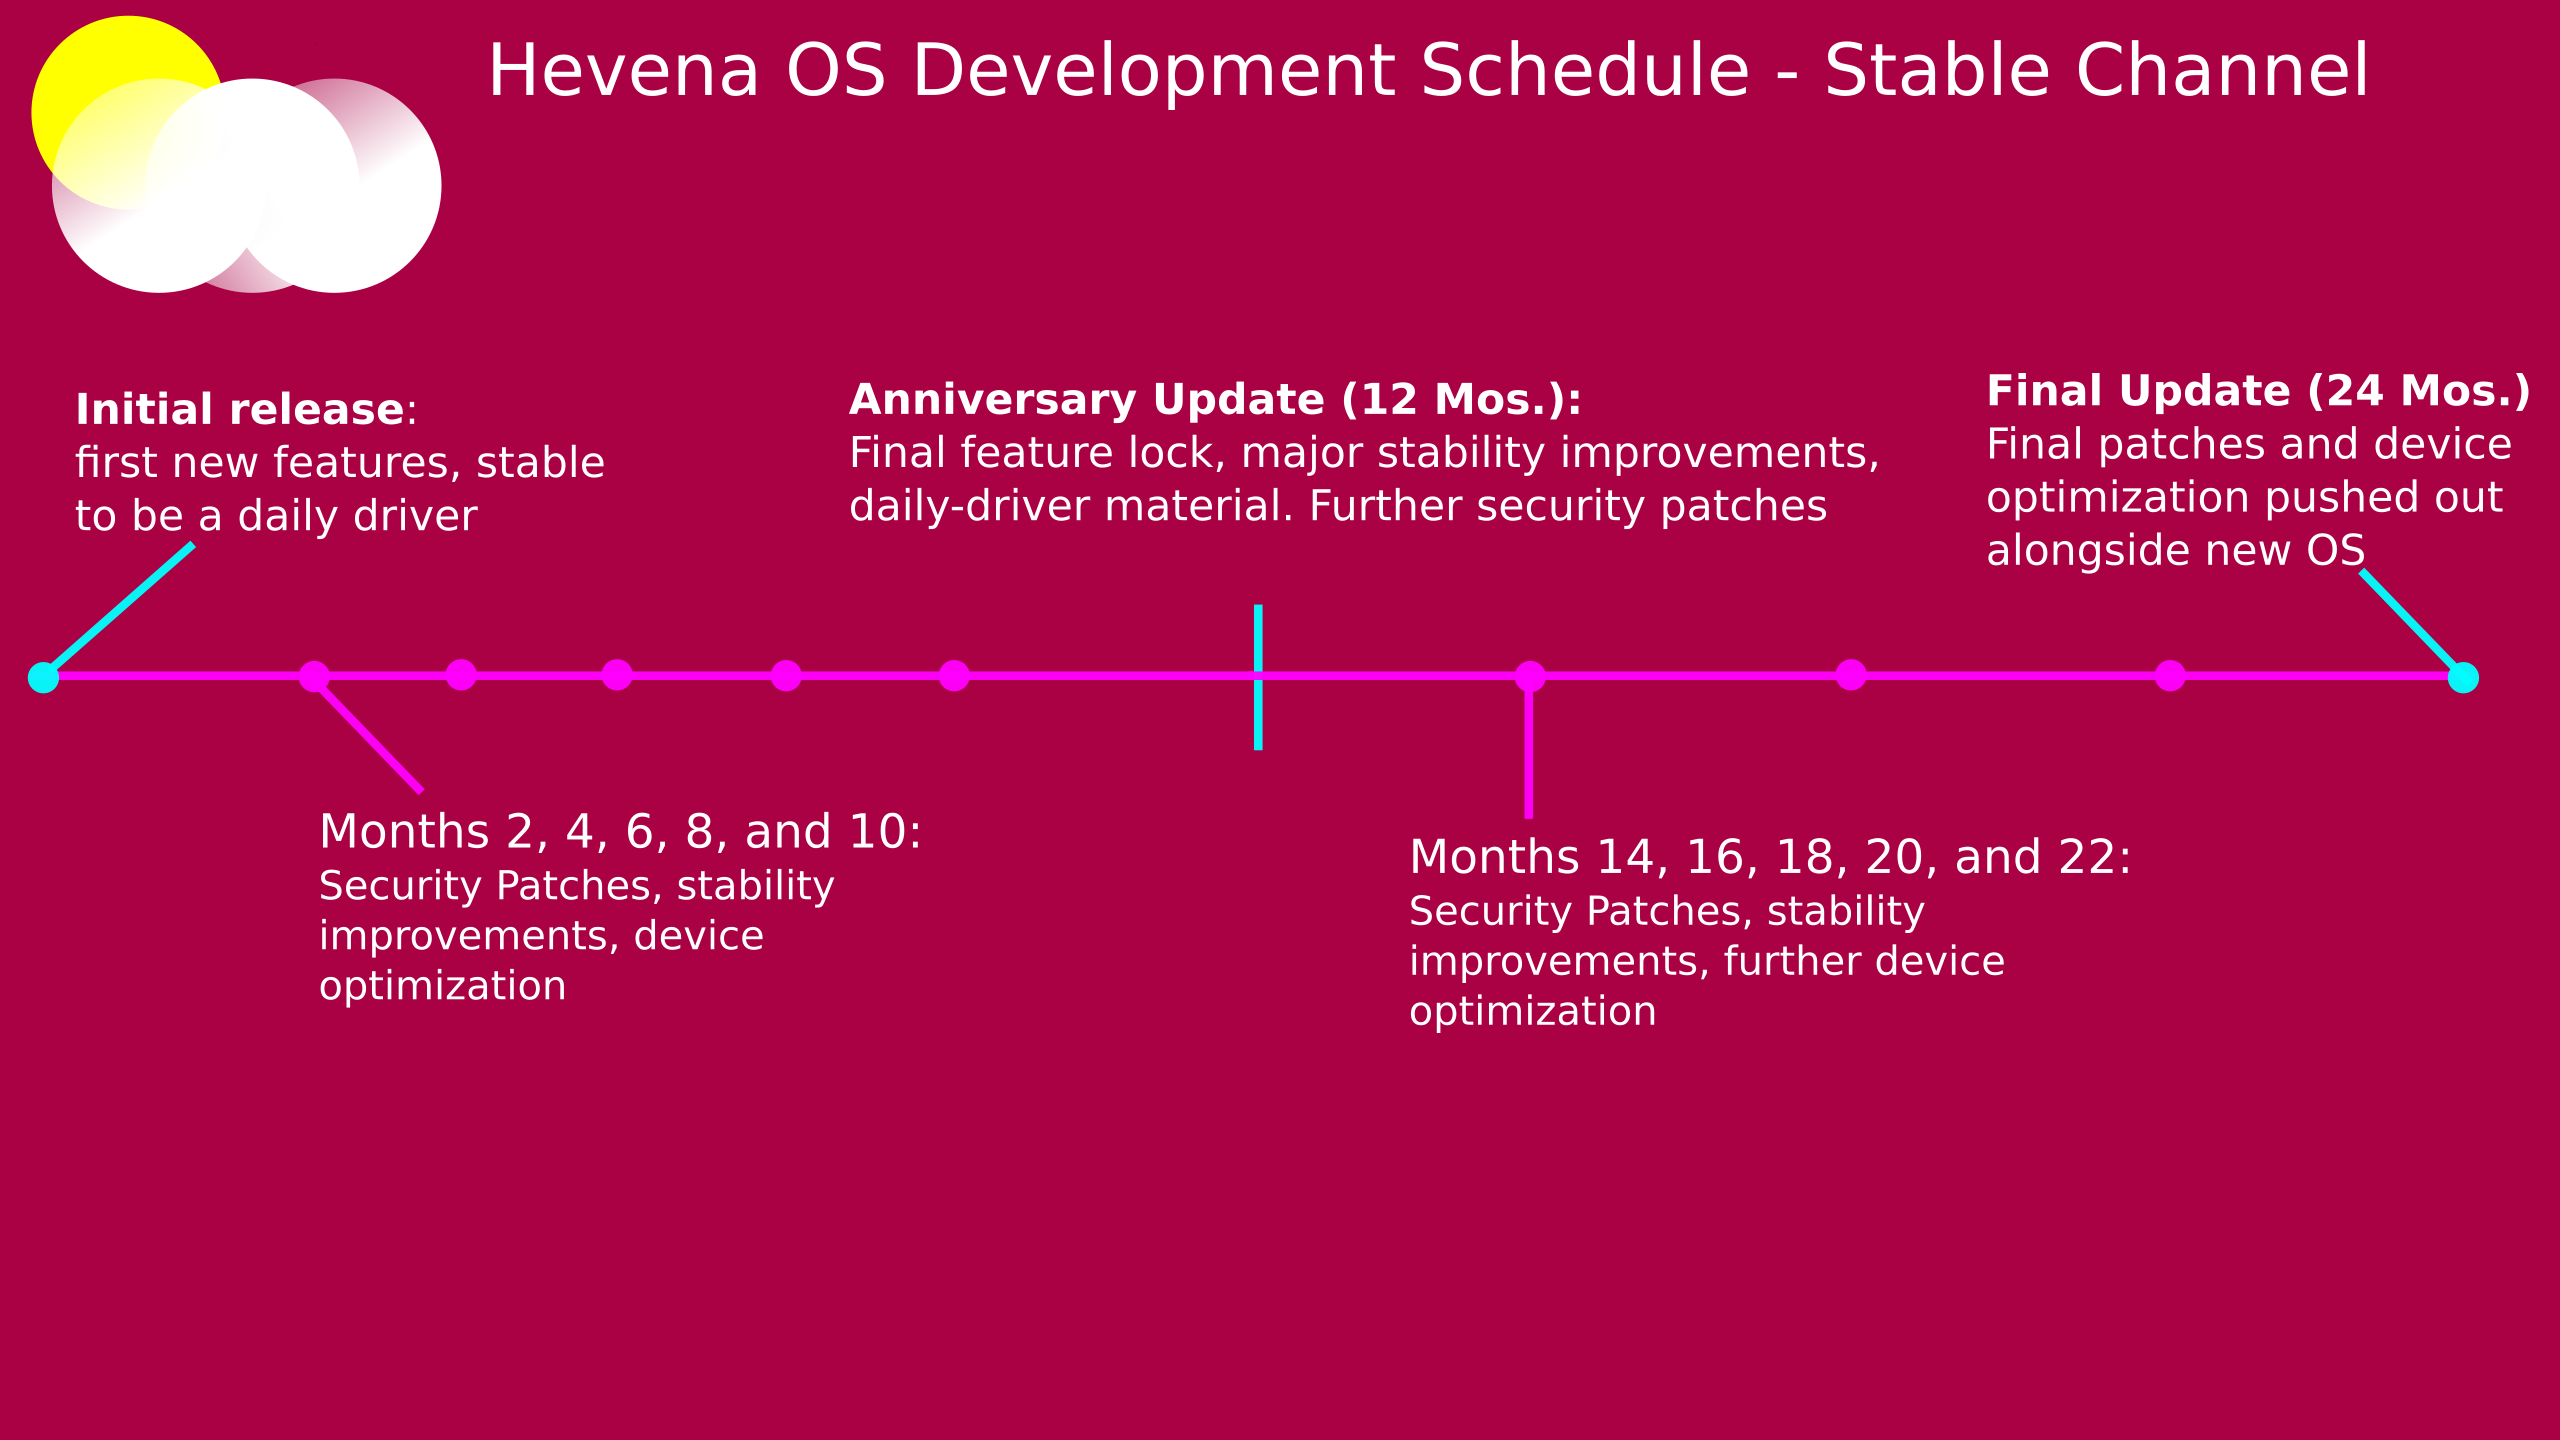 Development Schedule